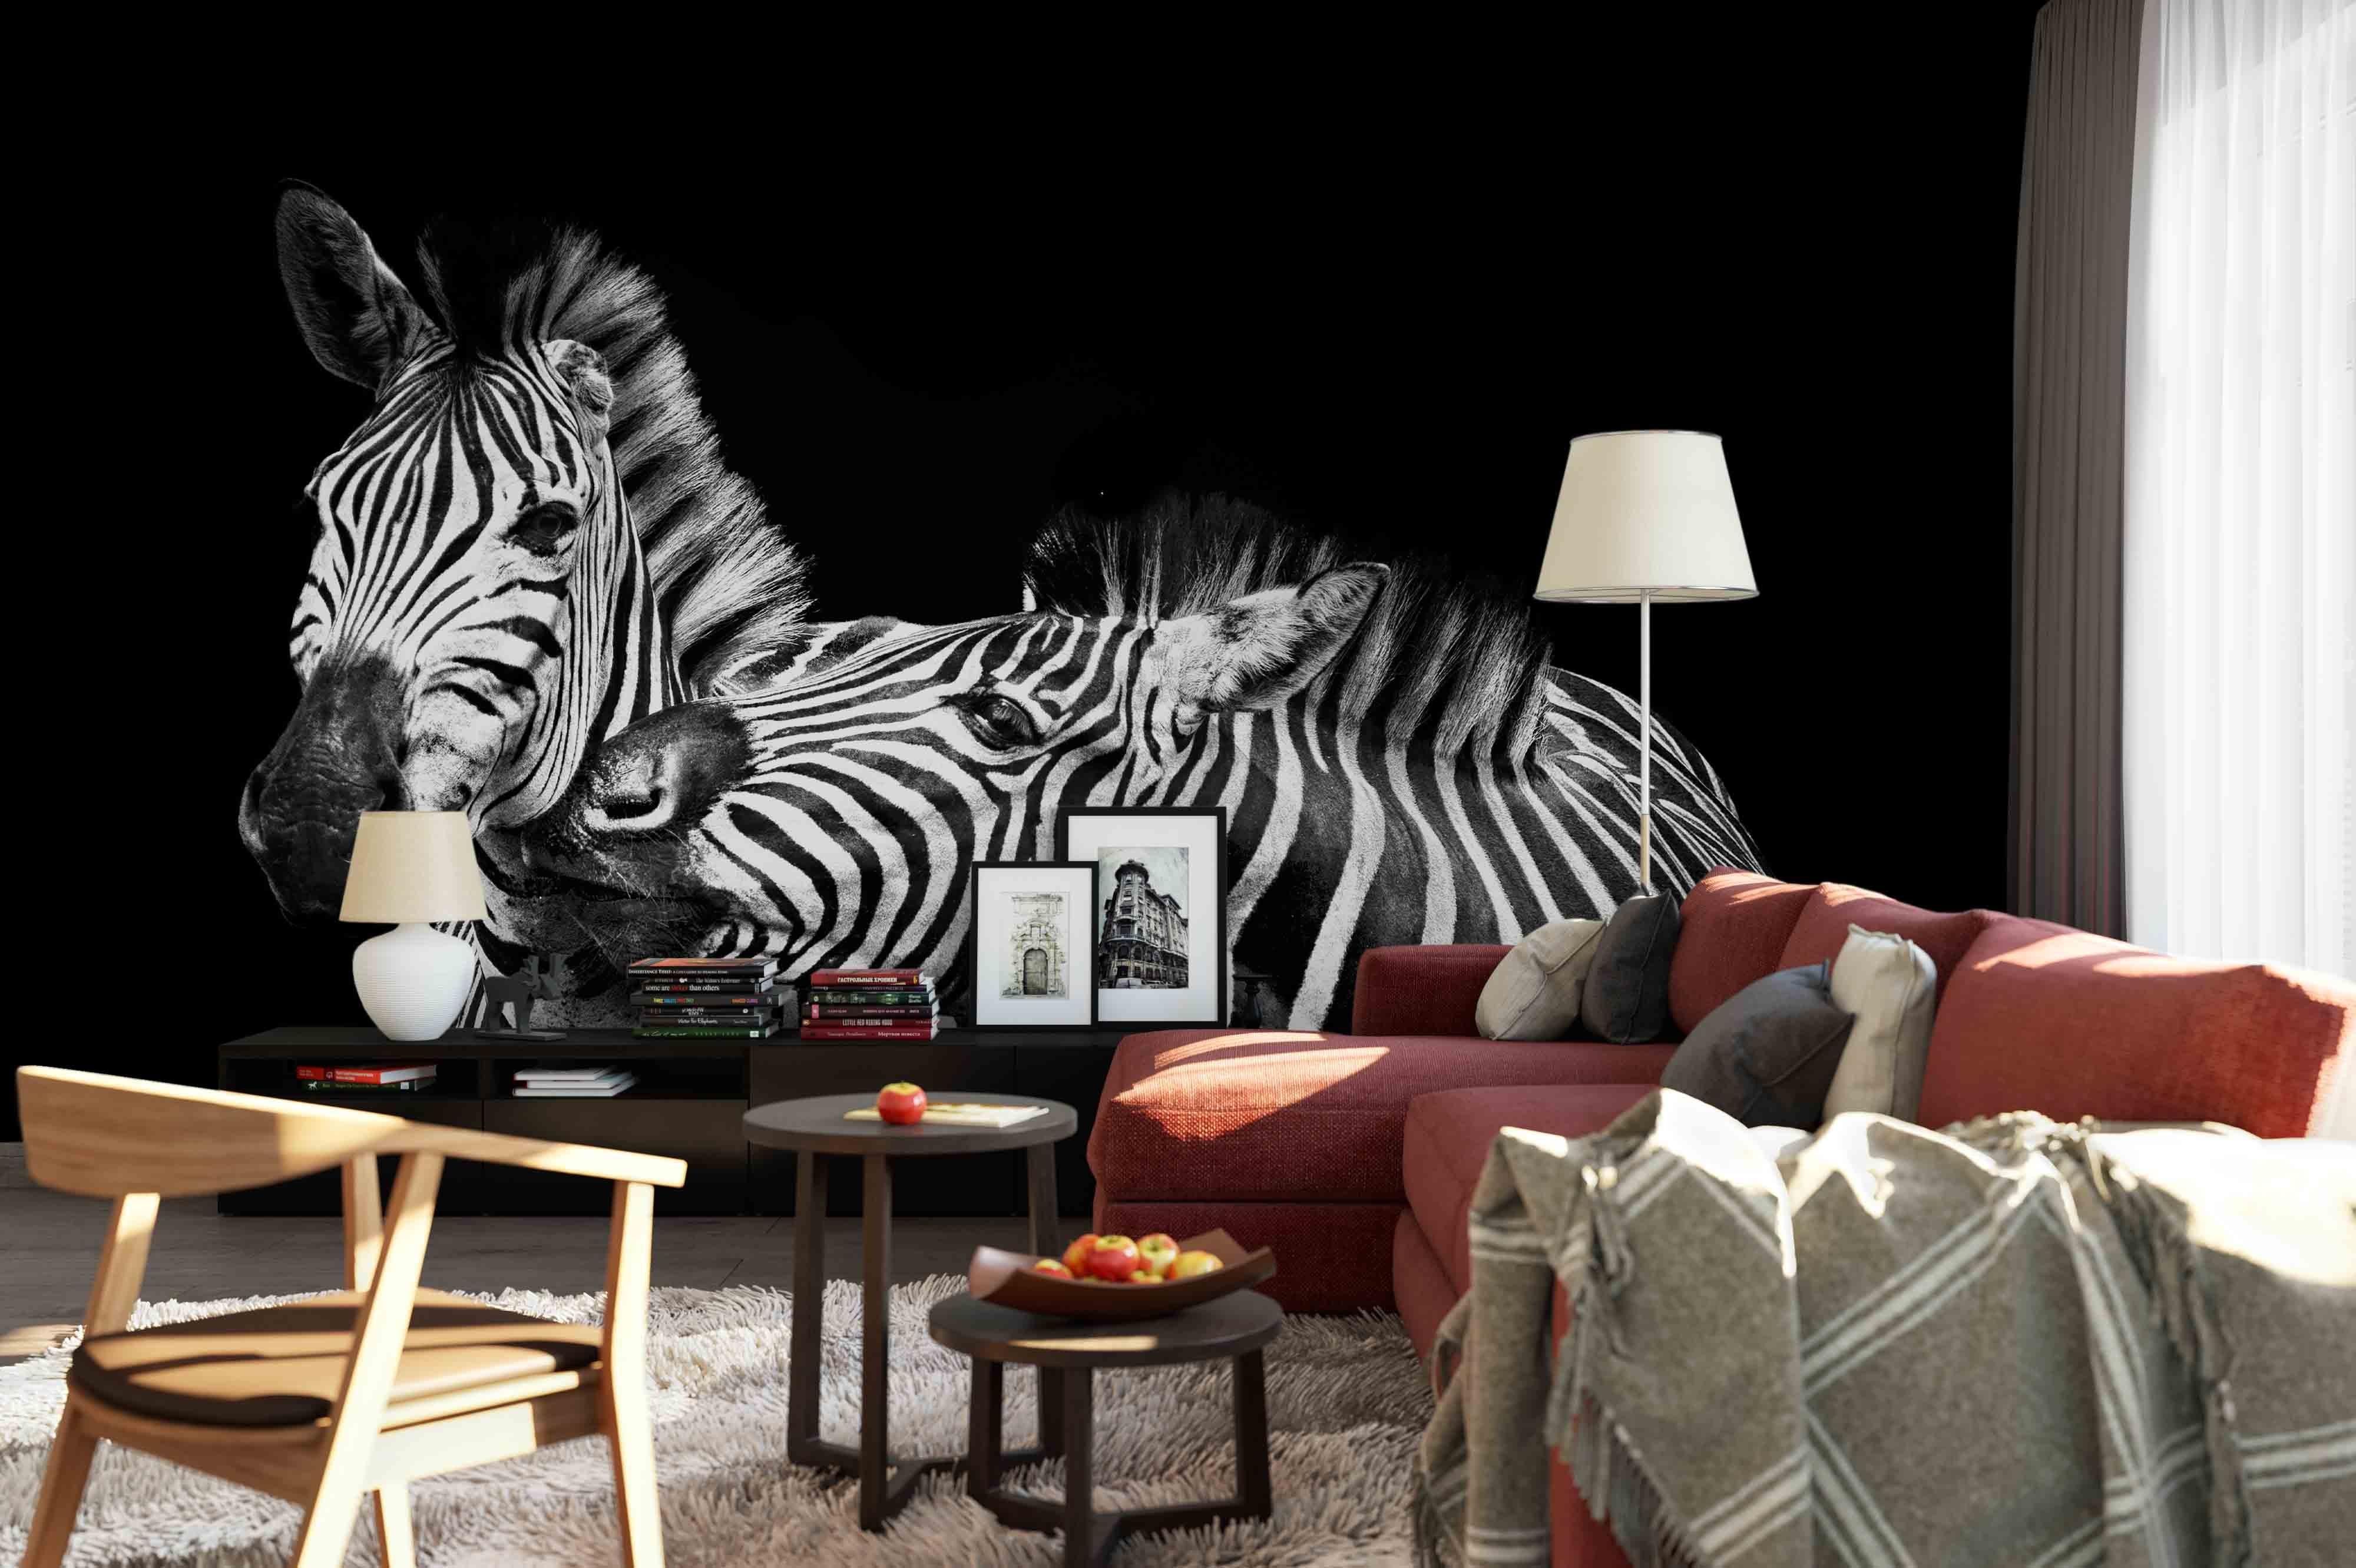 3D Zebra Wall Mural Wallpaper 63- Jess Art Decoration